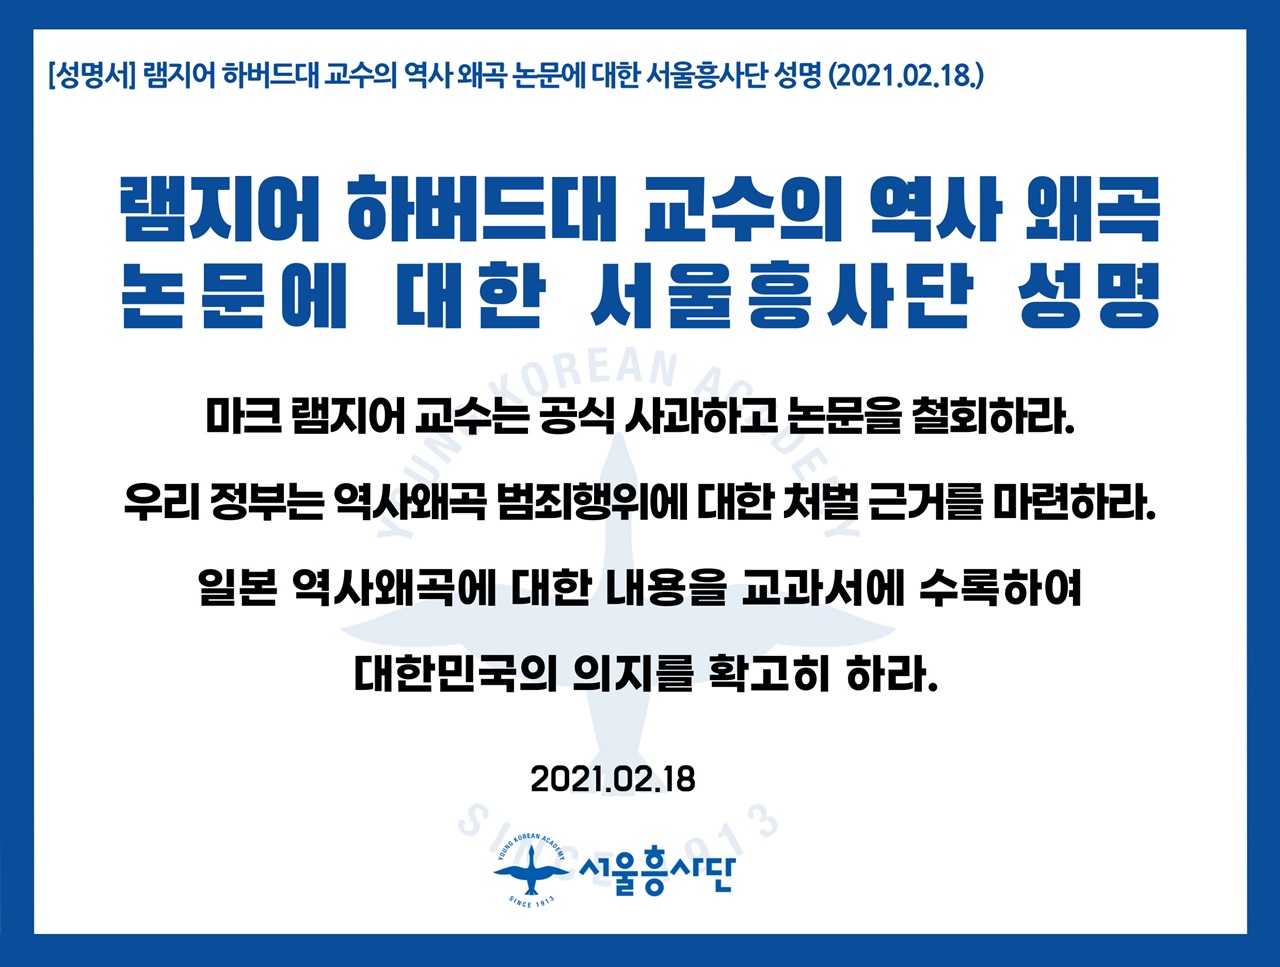 서울흥사단은 18일 오전 성명을 발표, 램지어 교수의 사과와 논문 철회를 요구하고 나섰다. 또 우리 정부에 역사왜곡 범죄행위에 대한 처벌 근거 마련도 촉구했다. 